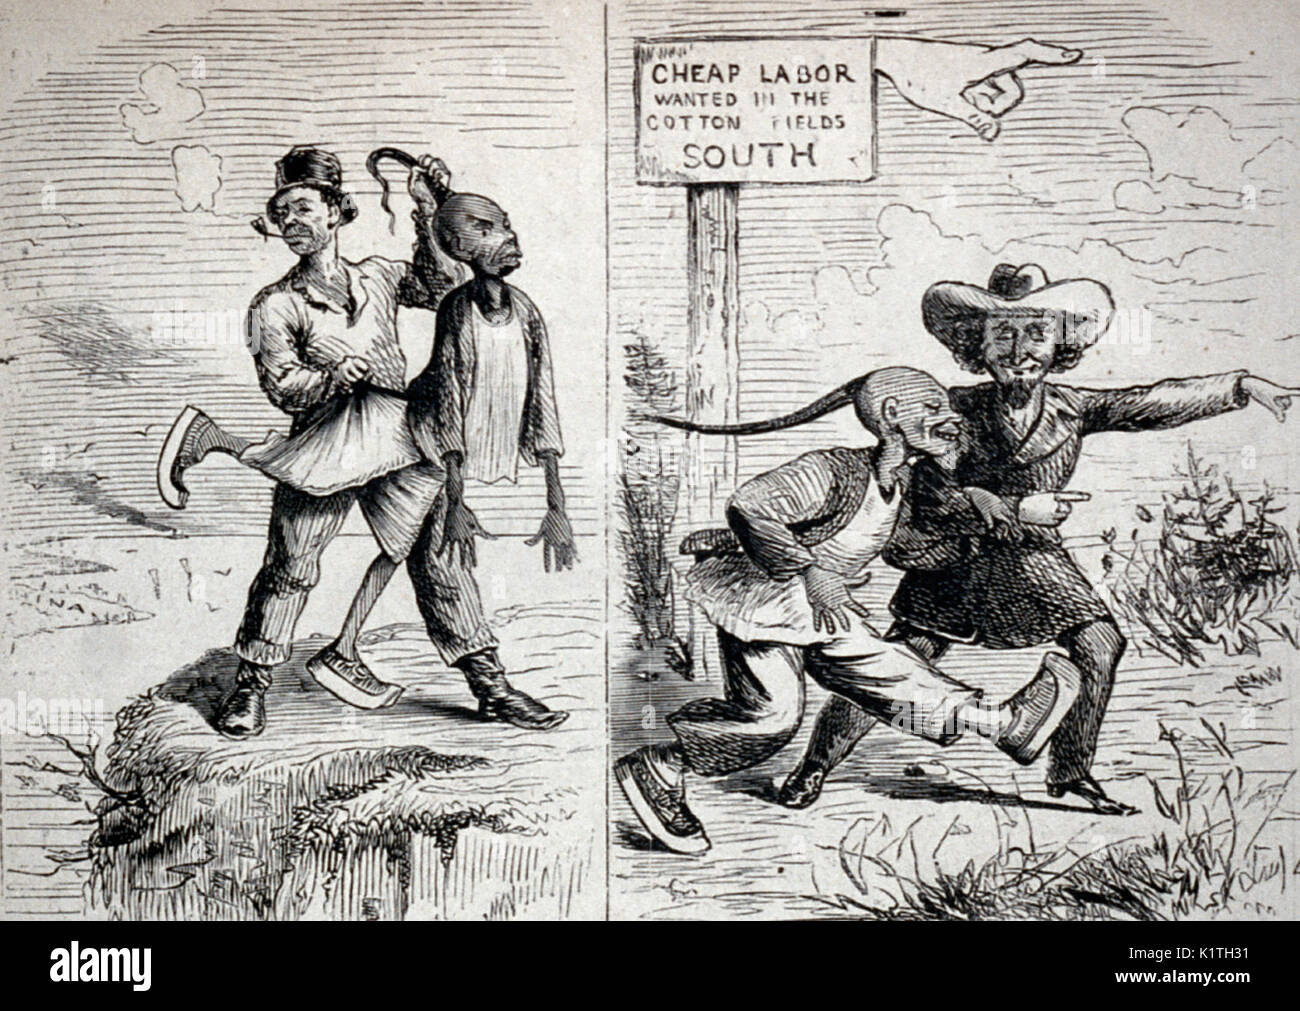 Que ferons-nous de John Chinaman ? [2 illustrations : 1. Irlandais de jeter un homme chinois sur falaise vers la Chine ; 2. Propriétaire de plantation du sud le menant à des champs de coton - caricature raciste, USA, 1869 Banque D'Images